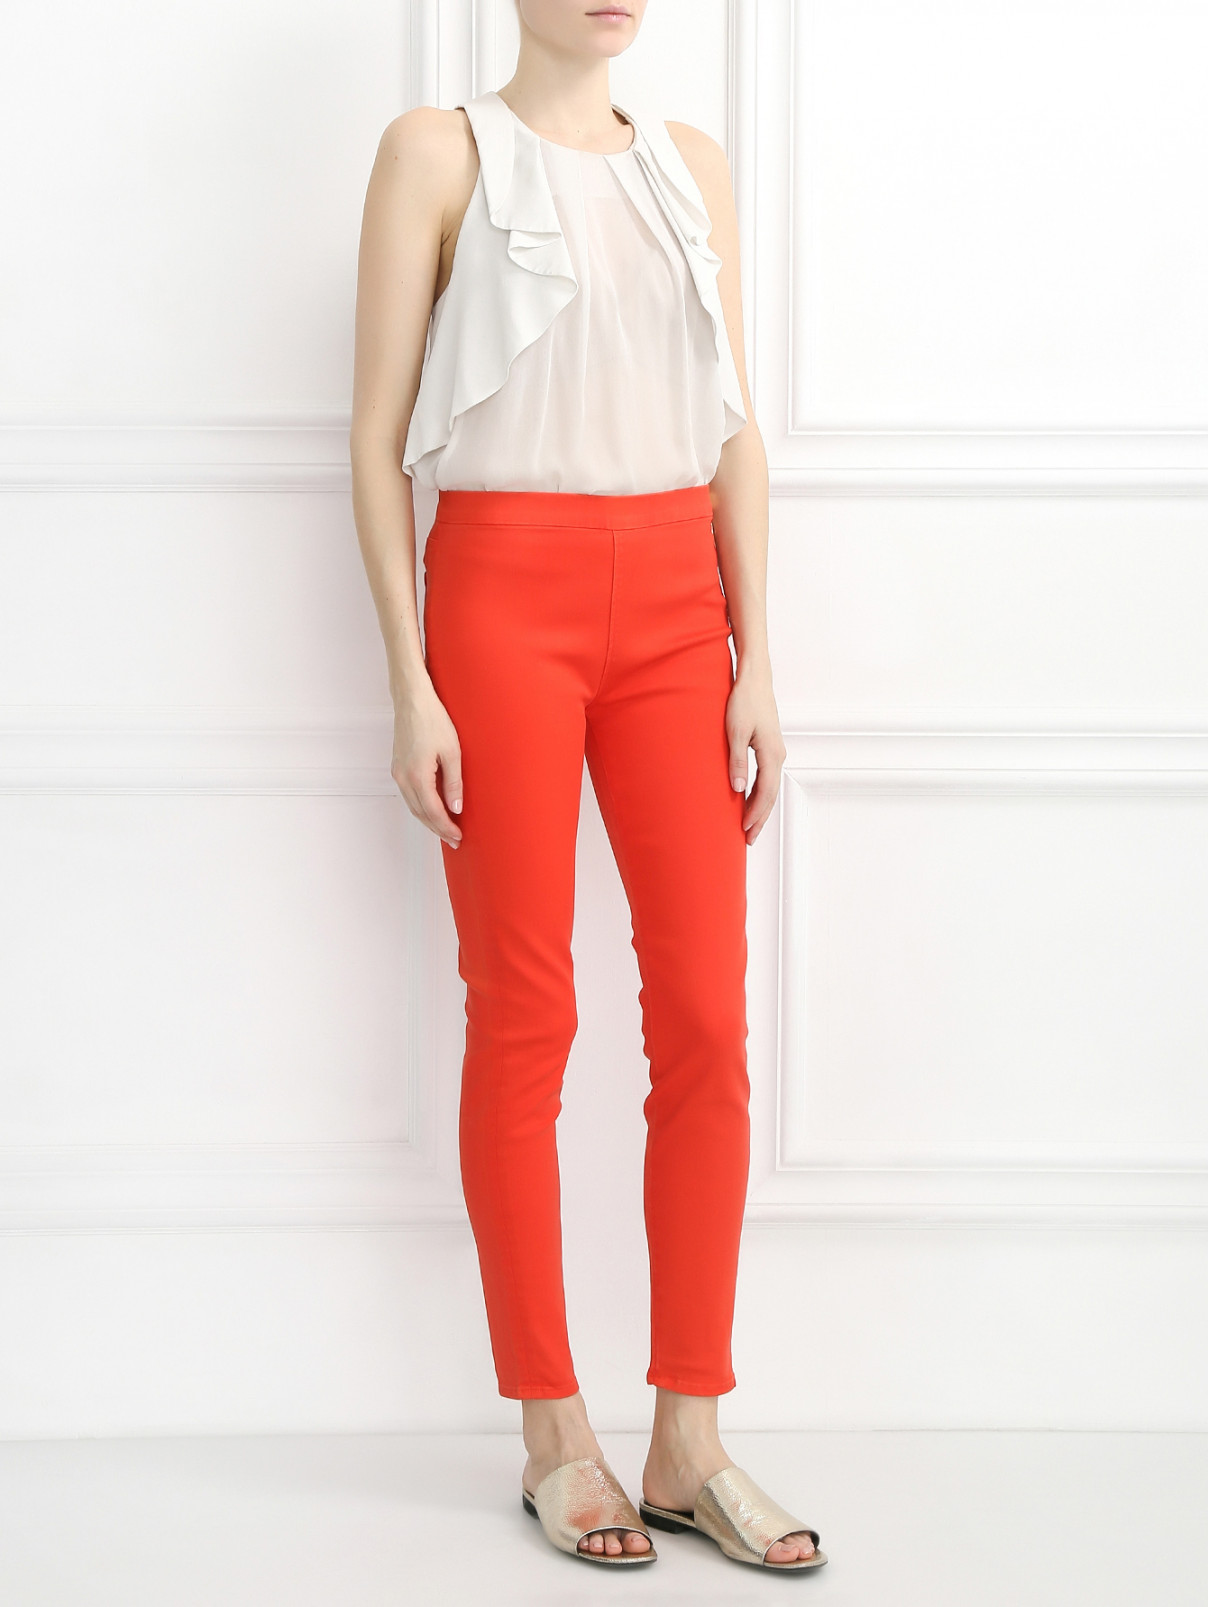 Узкие джинсы из смешанного хлопка 7 For All Mankind  –  Модель Общий вид  – Цвет:  Оранжевый